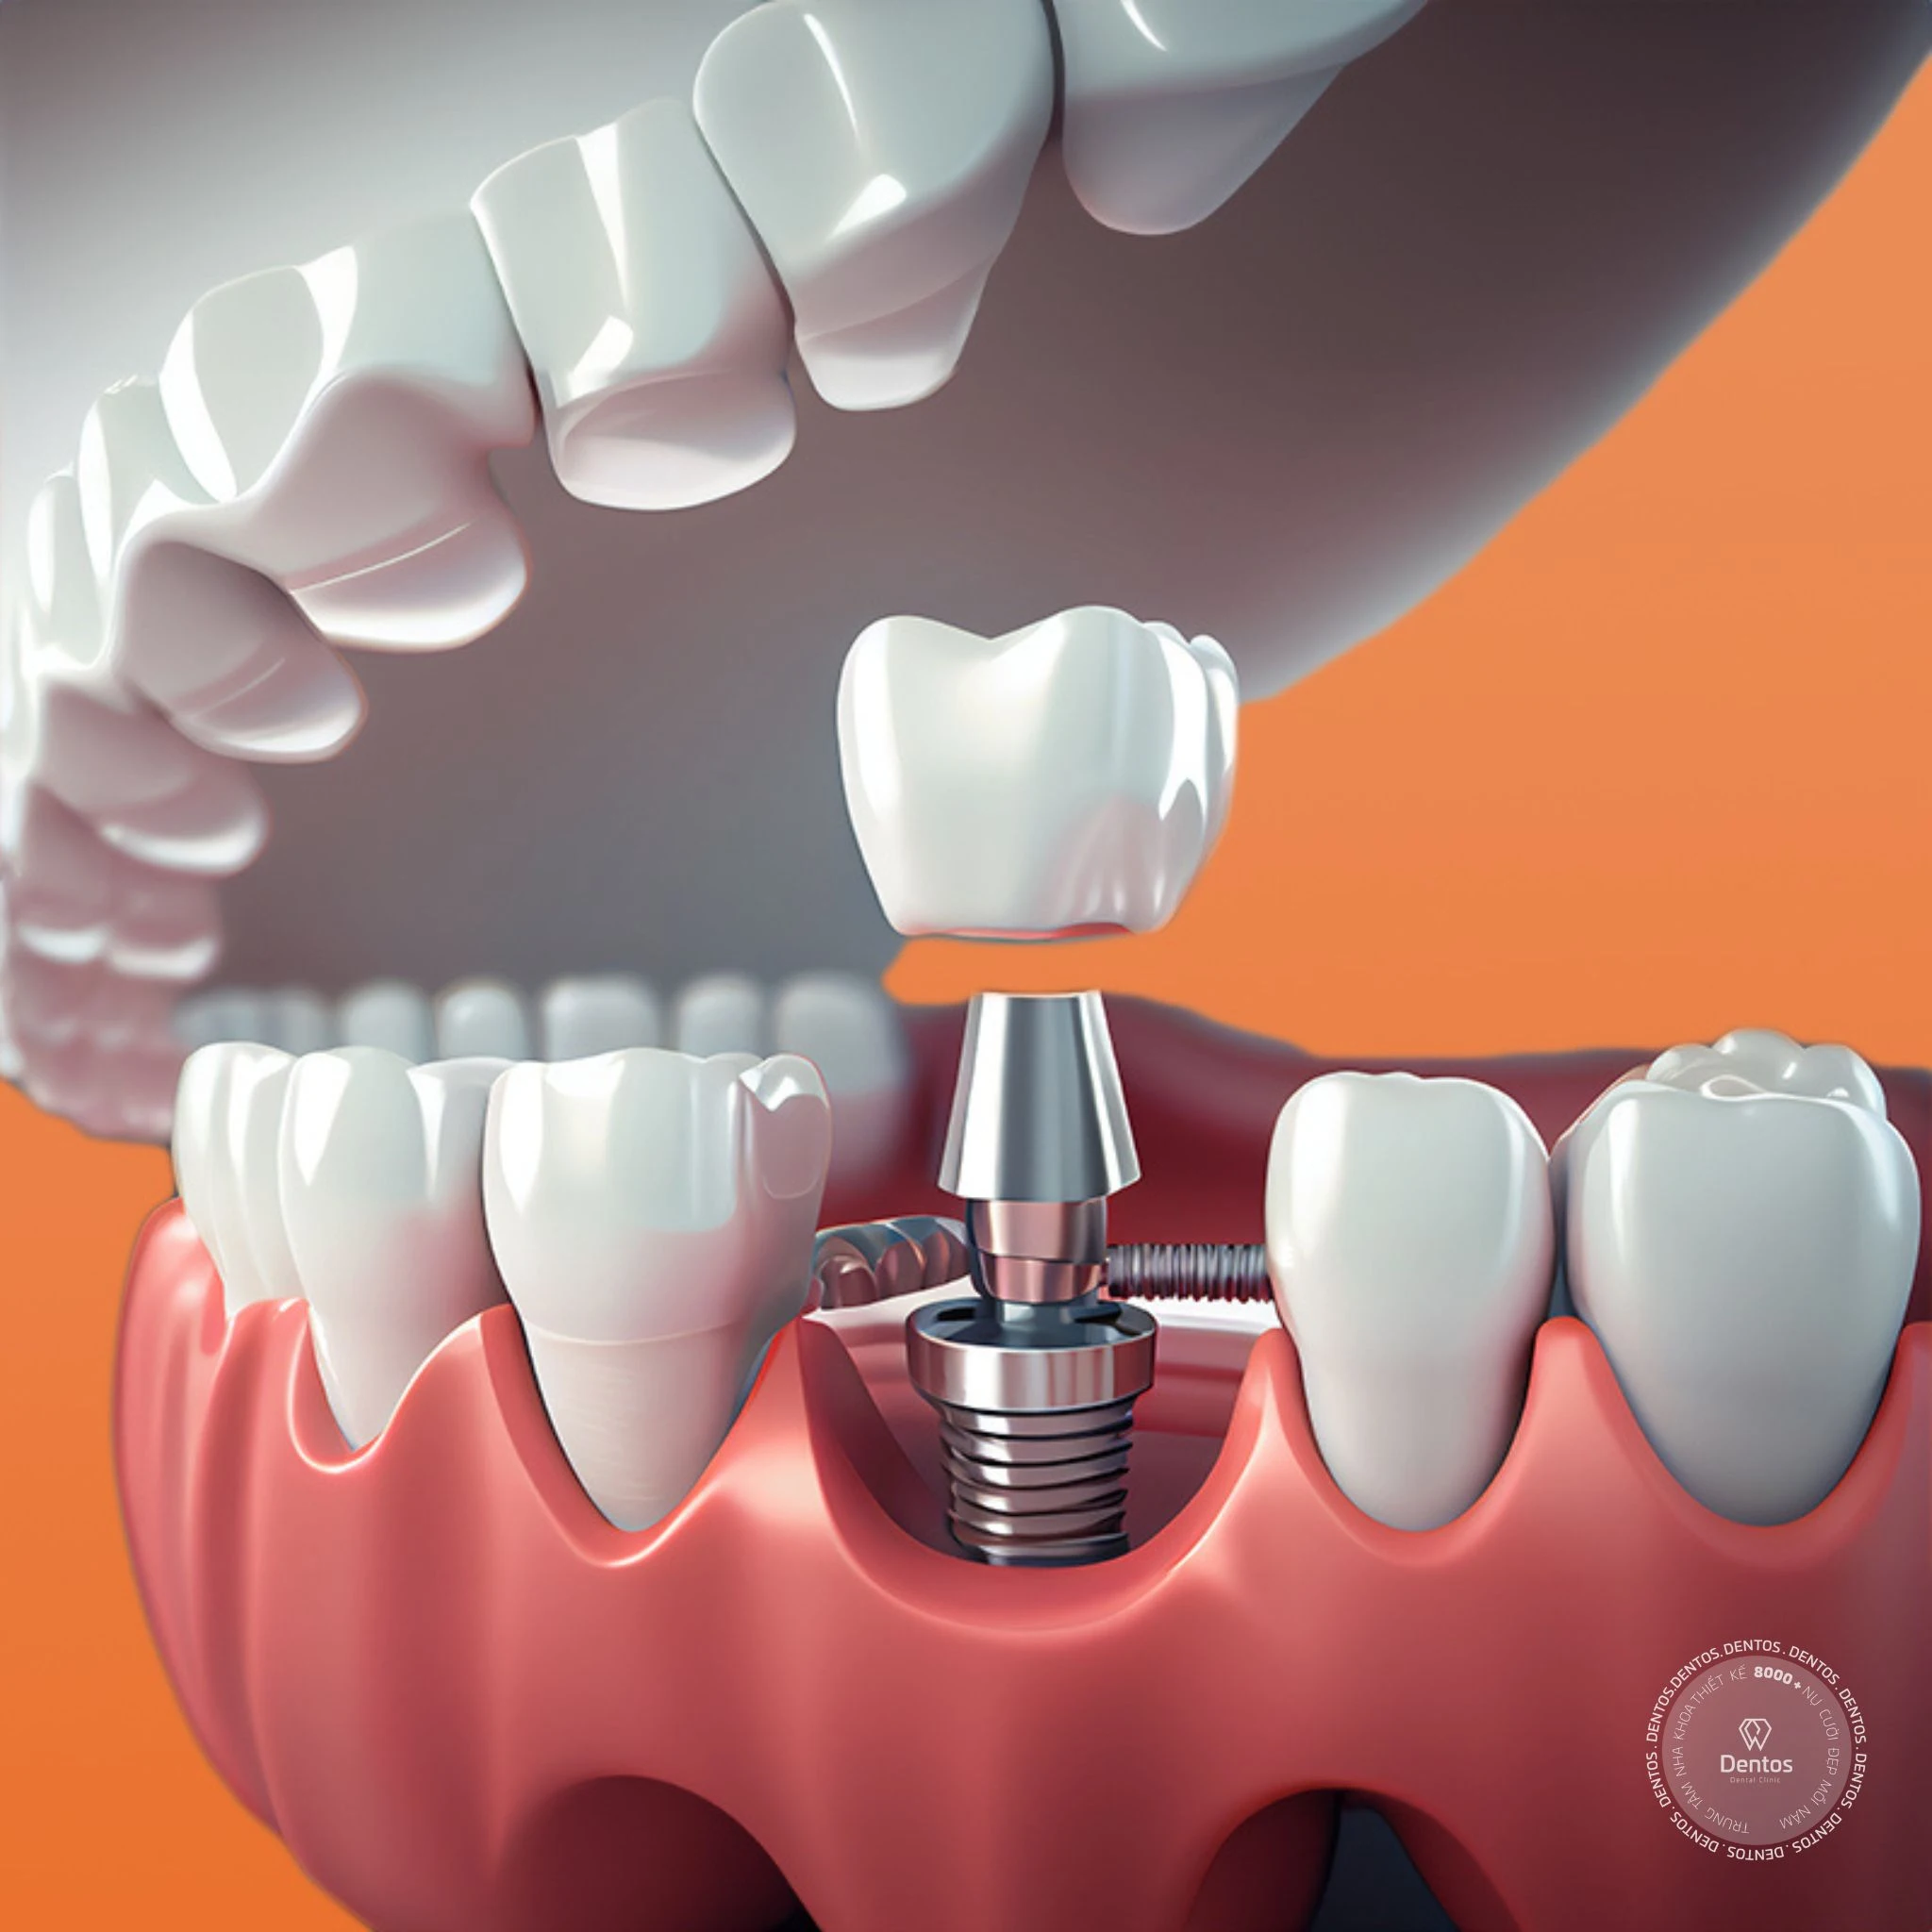 Làm răng thẩm mỹ - Cấy ghép Implant giúp tạo thành răng hoàn chỉnh để thay thế cho răng đã mất